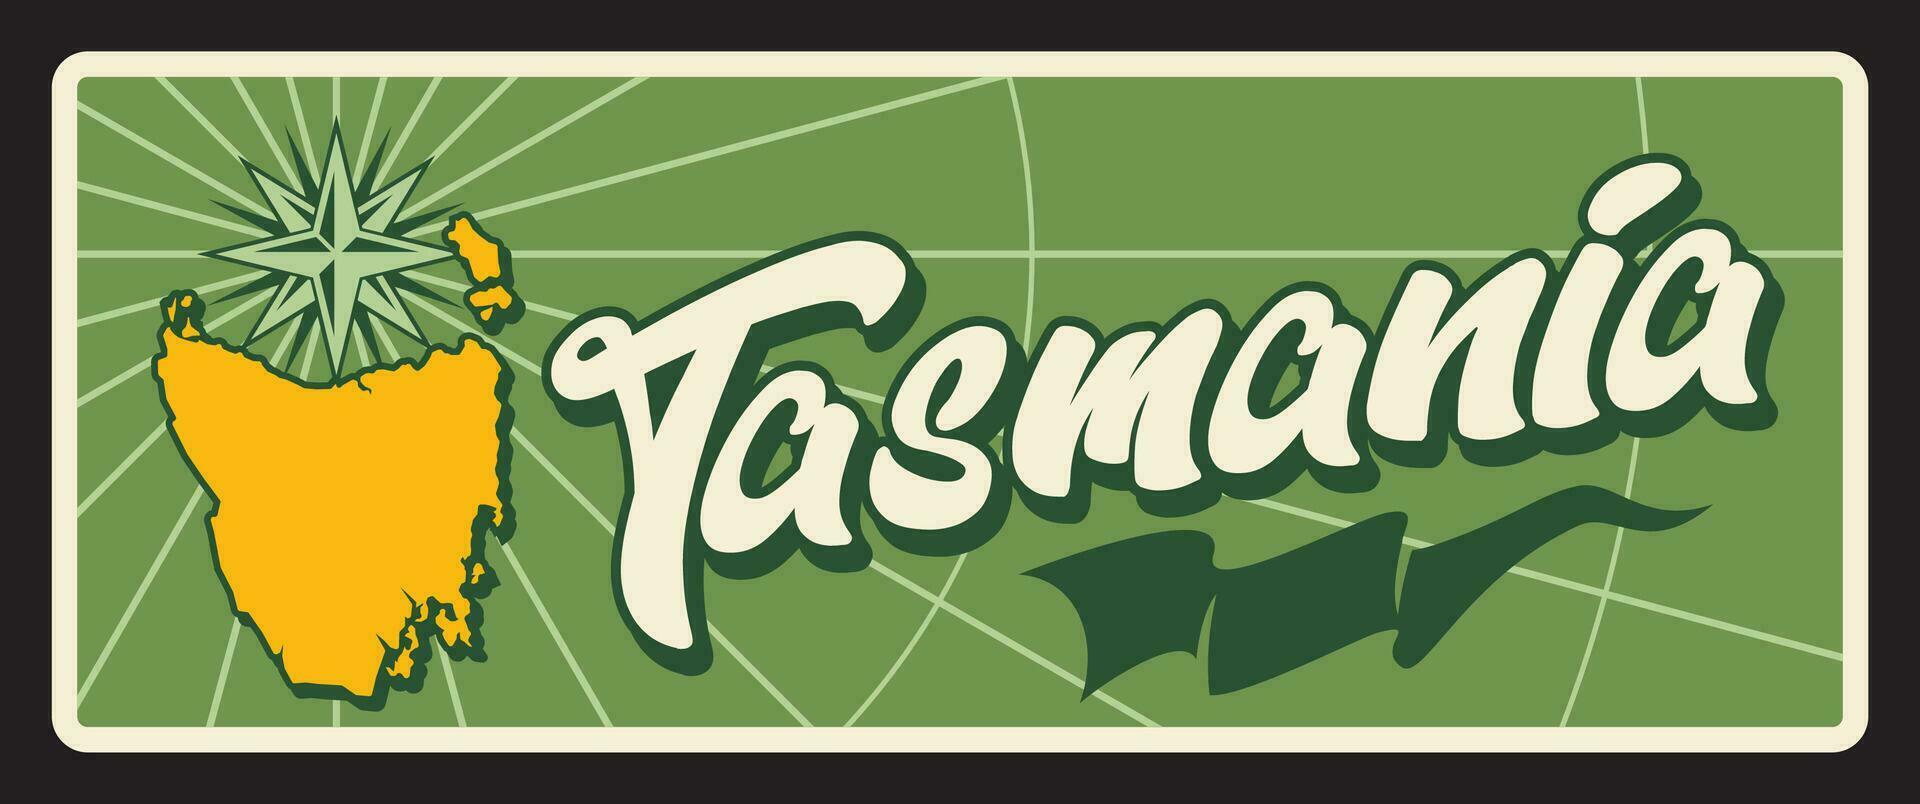 Australien tasmania stat årgång resa tallrik vektor